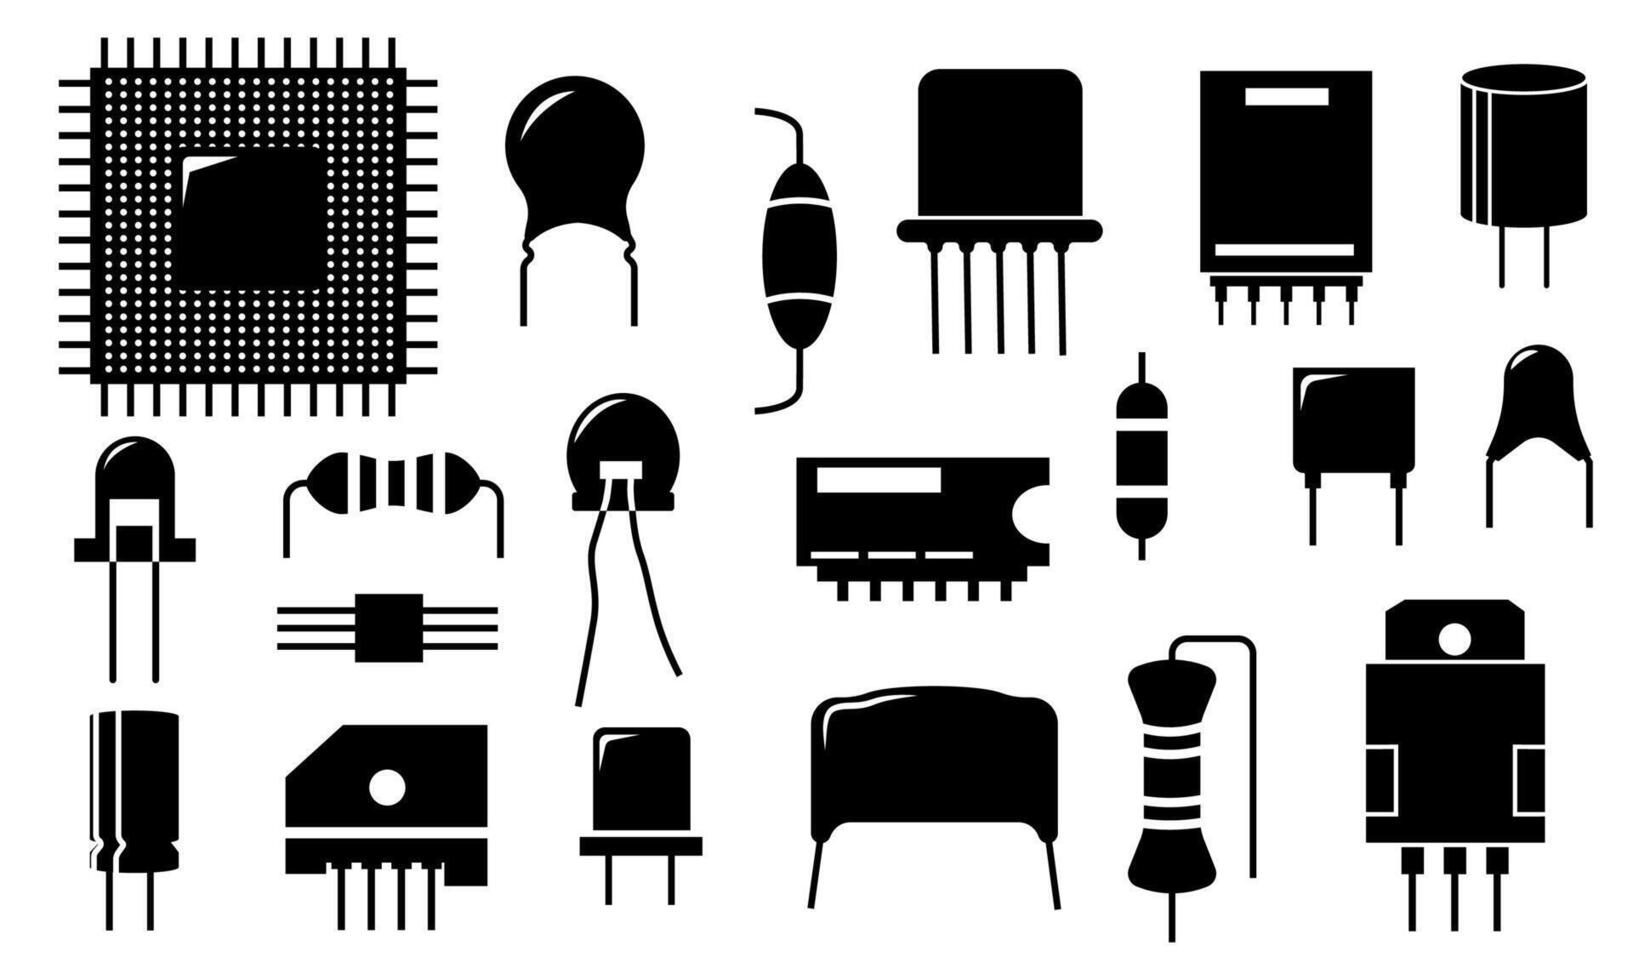 negro electrónico componente iconos eléctrico circuito conductor y semiconductor partes, diodo transistor resistor condensador elementos. vector conjunto